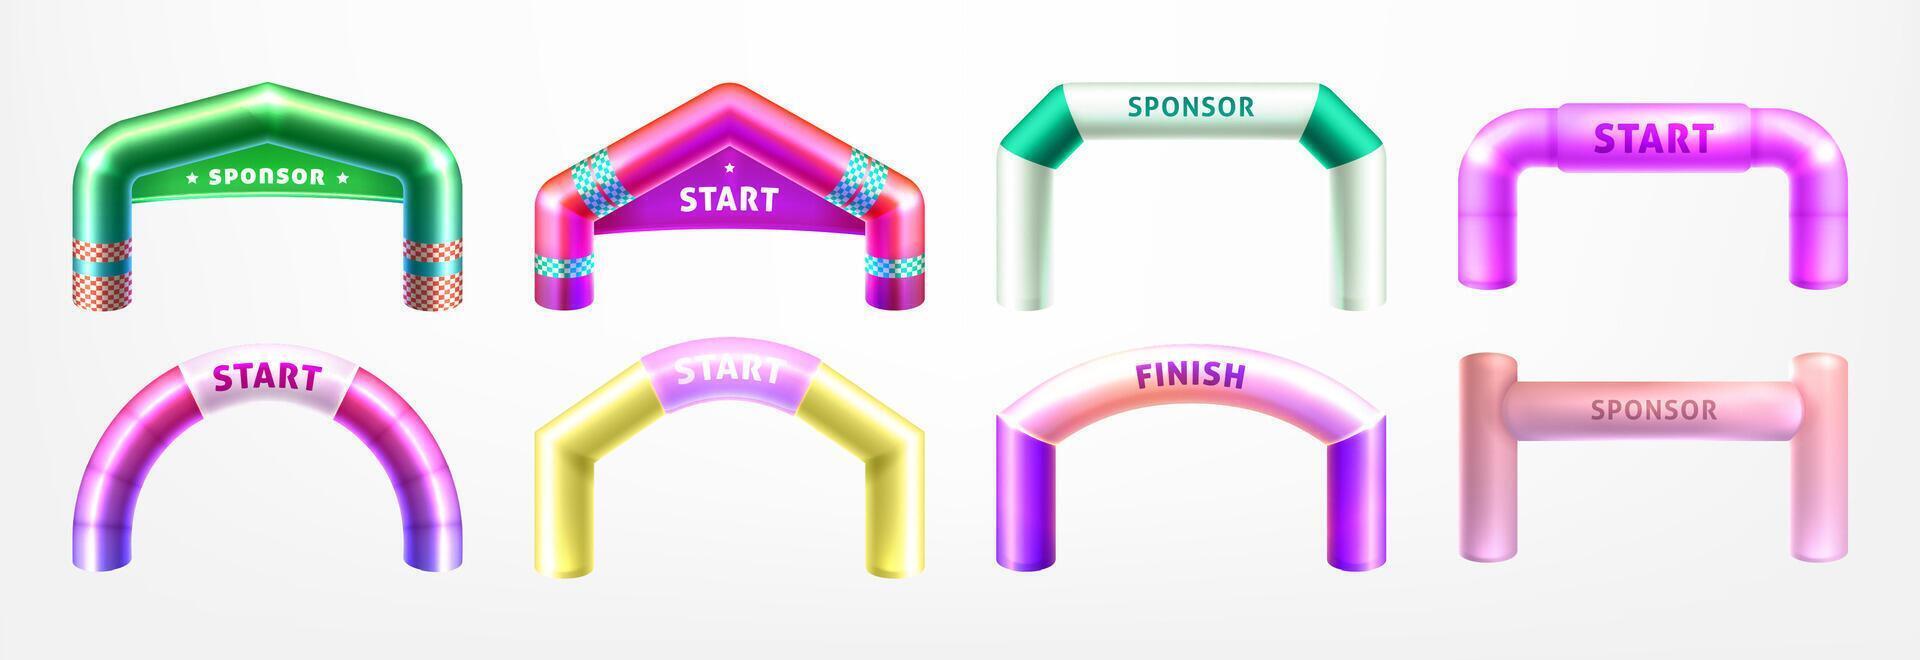 realistisk 3d färgrik uppblåsbar valv för sporter konkurrens. båge grindar av annorlunda former för maraton, races och utomhus- sport evenemang. Start och Avsluta valvgångar isolerat på vit bakgrund. vektor